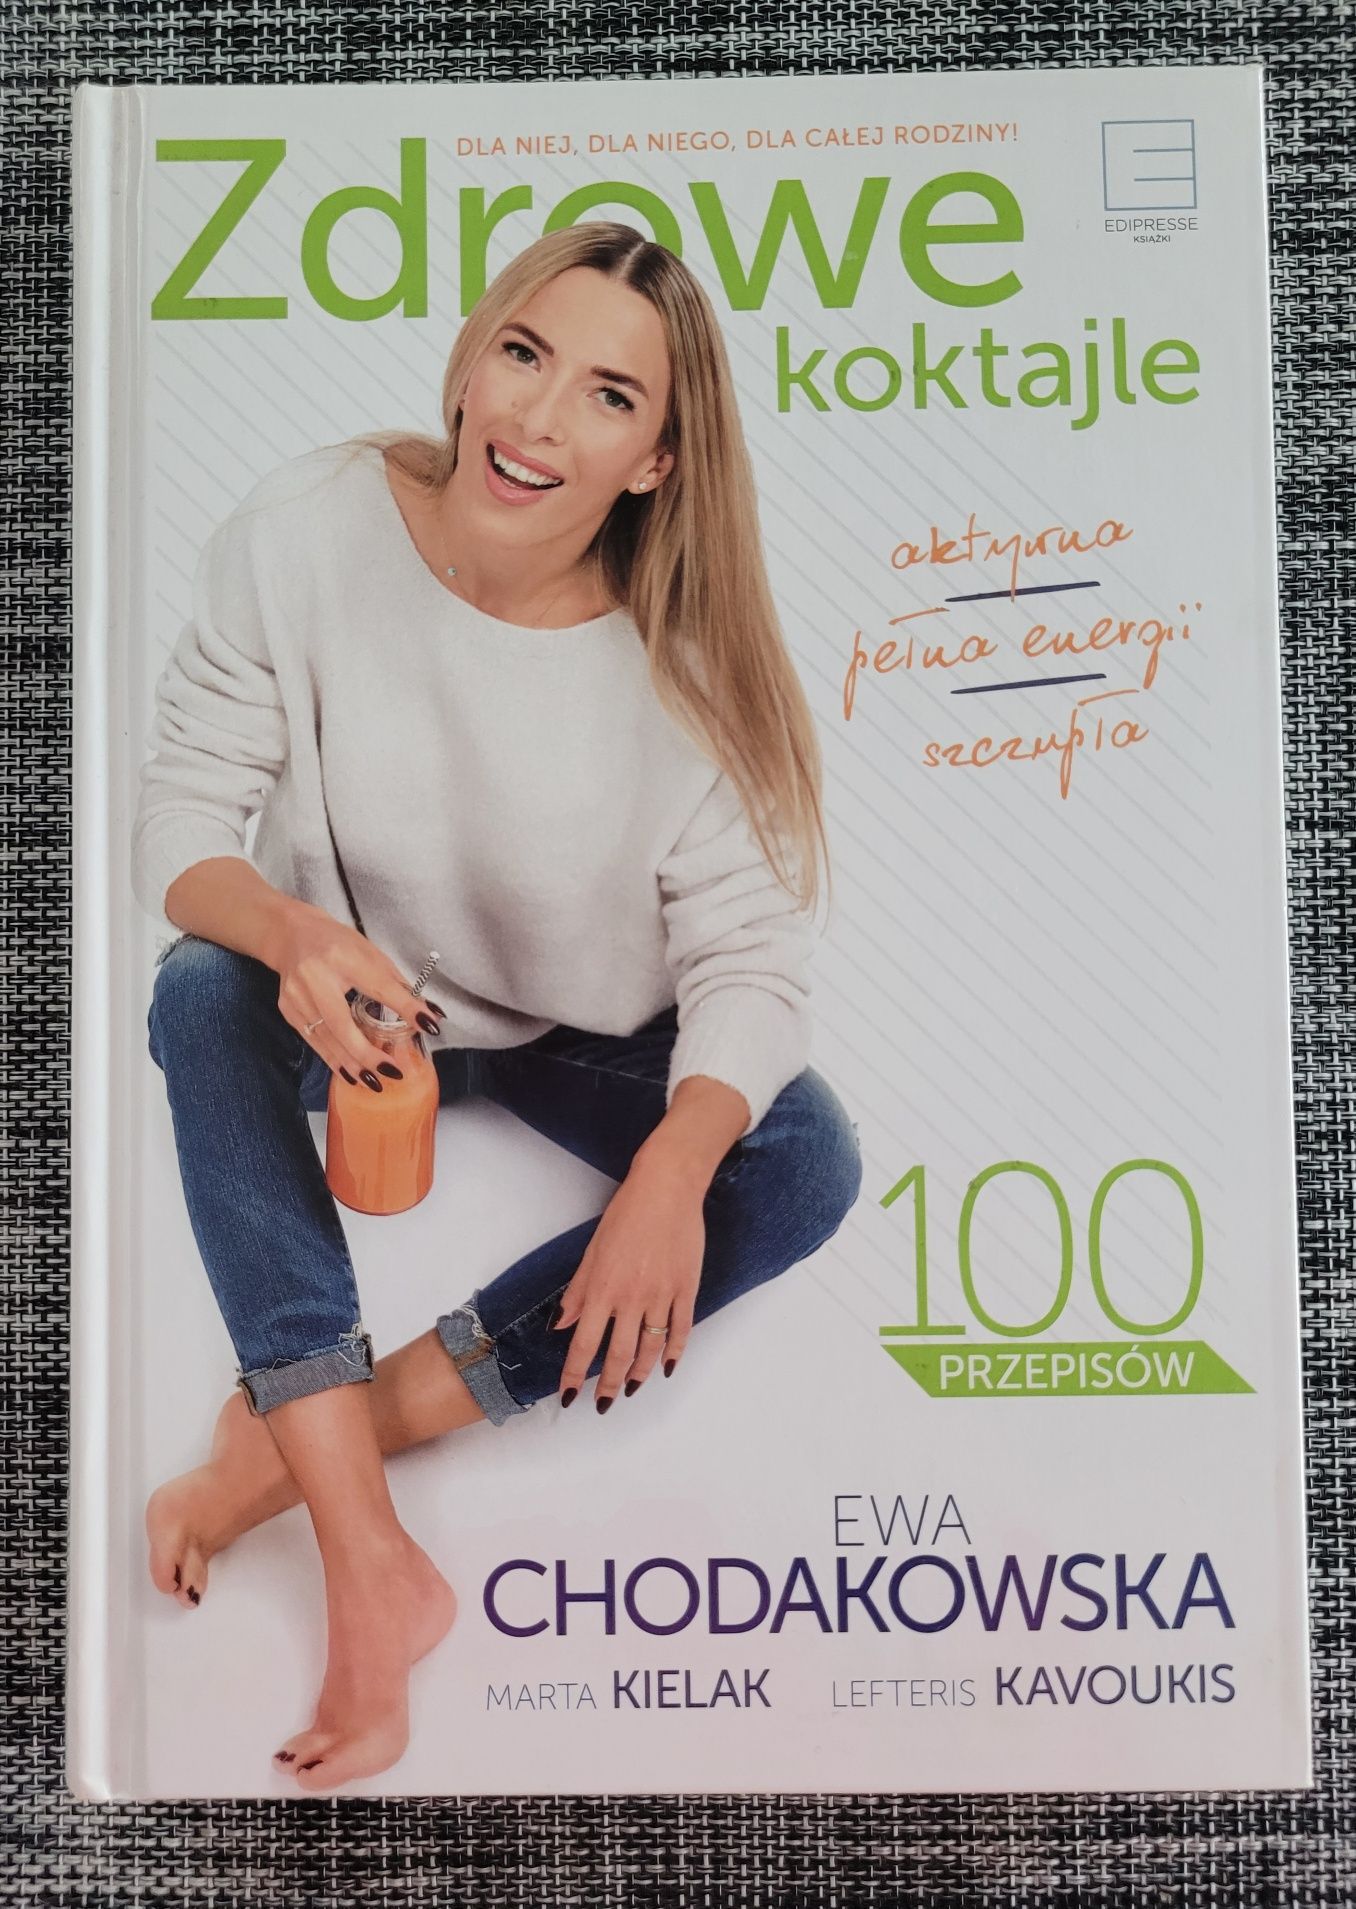 Zdrowe Koktajle Chodakowska, Zielone koktajle detoks